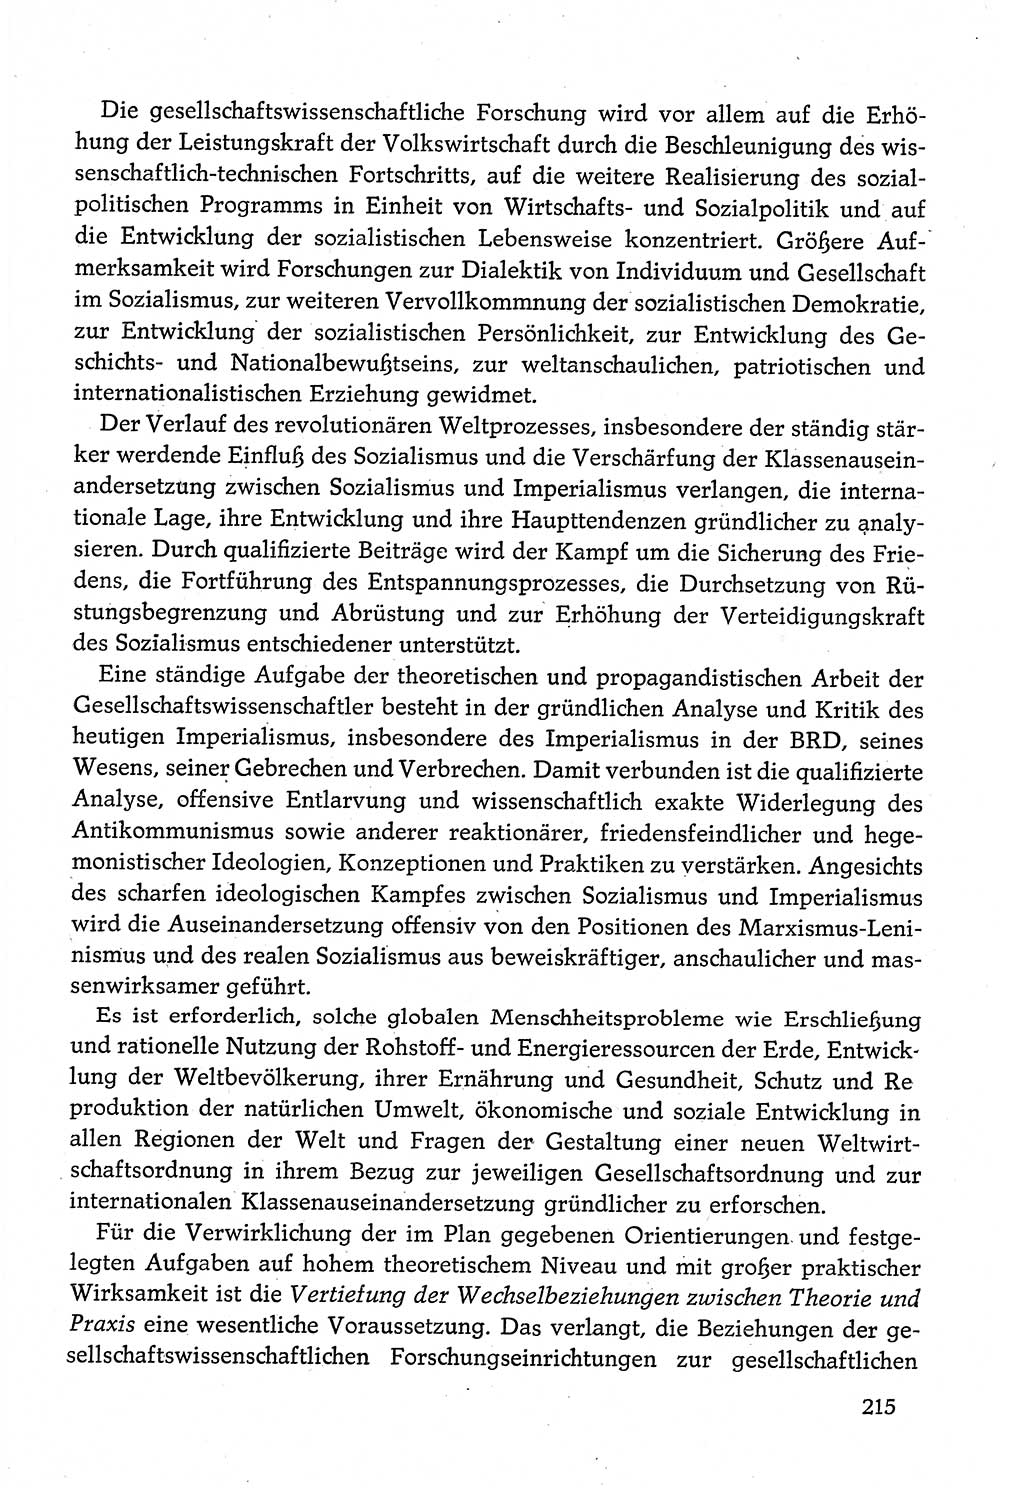 Dokumente der Sozialistischen Einheitspartei Deutschlands (SED) [Deutsche Demokratische Republik (DDR)] 1980-1981, Seite 215 (Dok. SED DDR 1980-1981, S. 215)